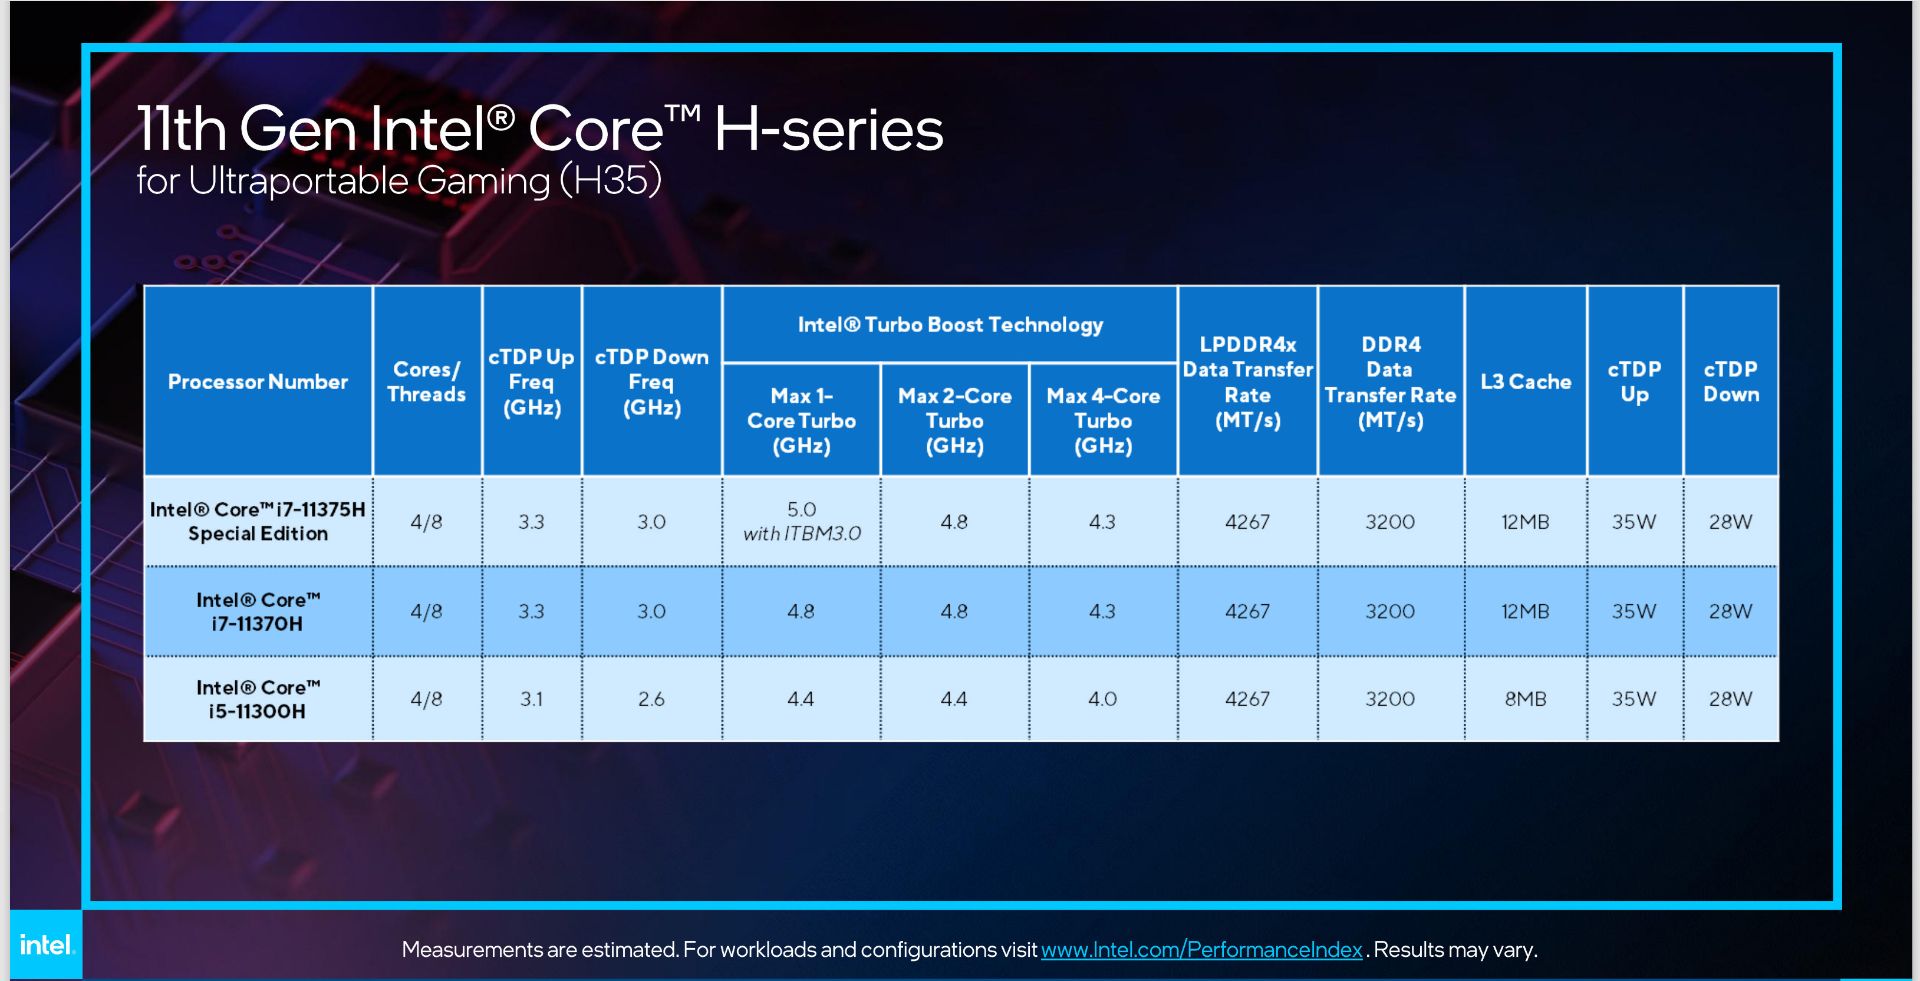 مشخصات فنی پردازنده های تایگر لیک H35 اینتل در مراسم CES 2021